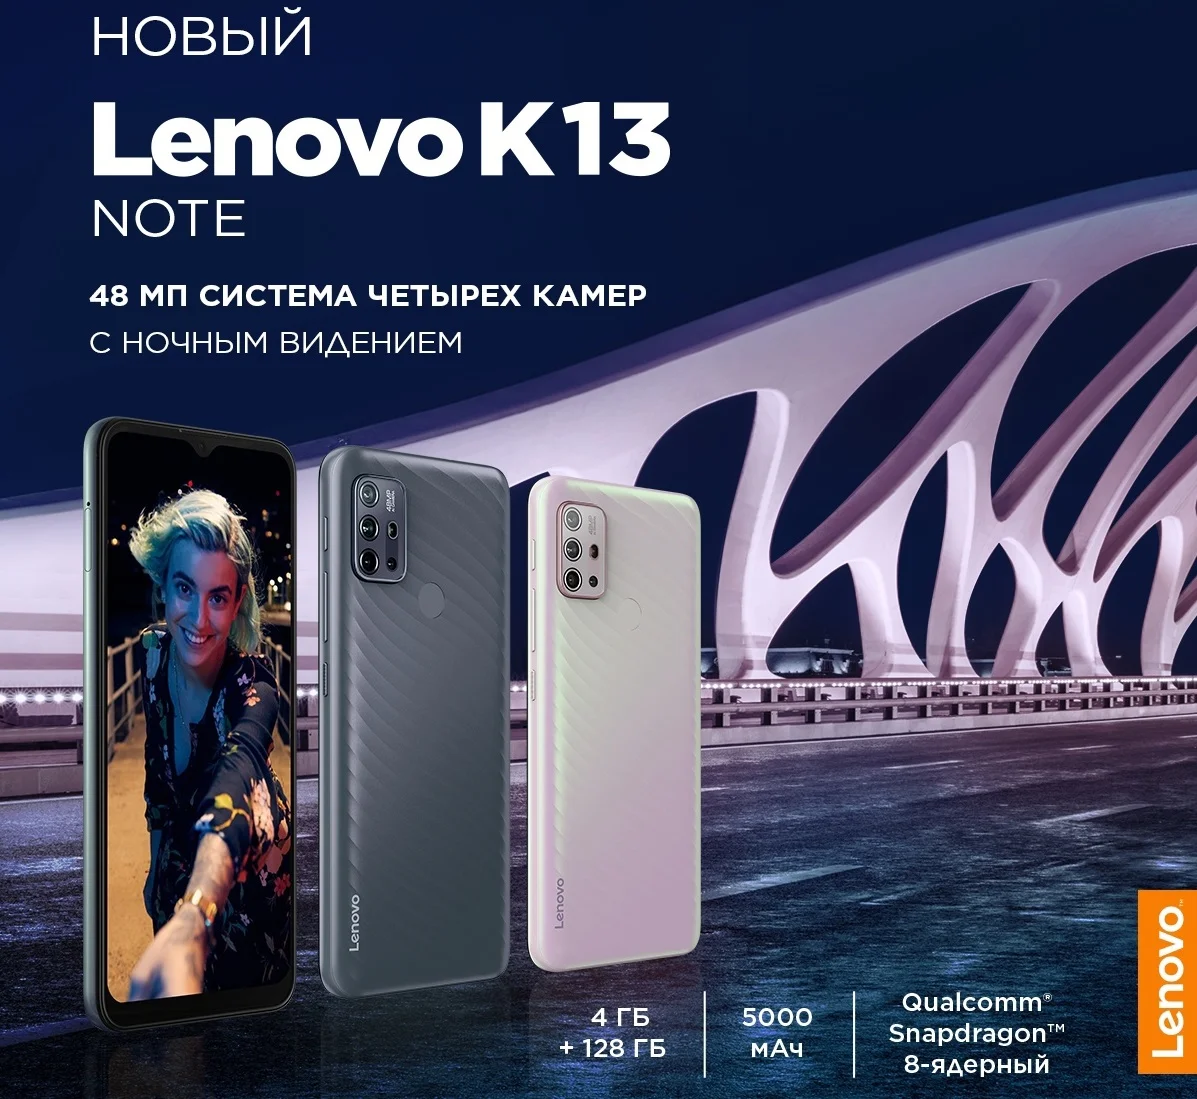 Lenovo выпустила бюджетный смартфон K13 Note. Россияне смогут купить его первыми - фото 1